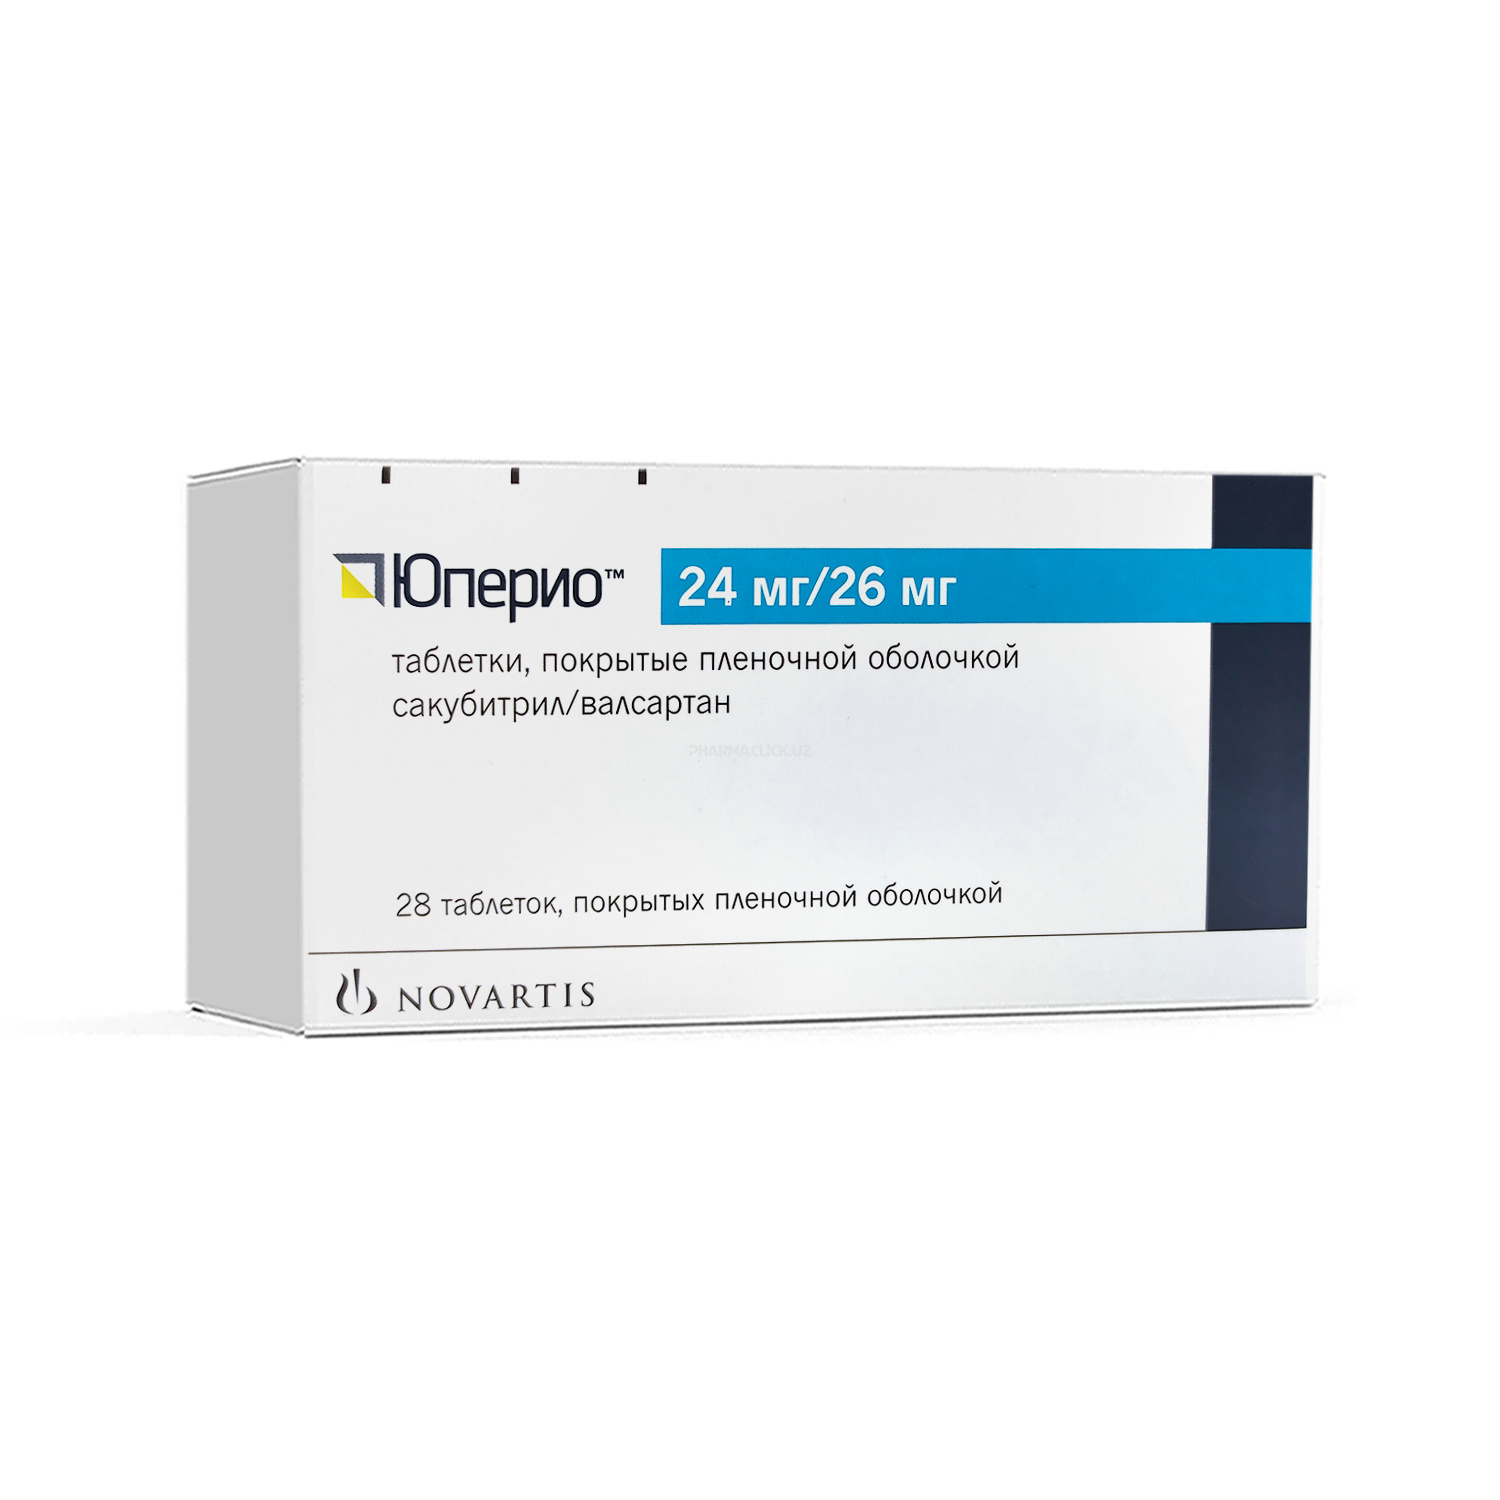 Yuperio tab. 24mg/26 mg №28